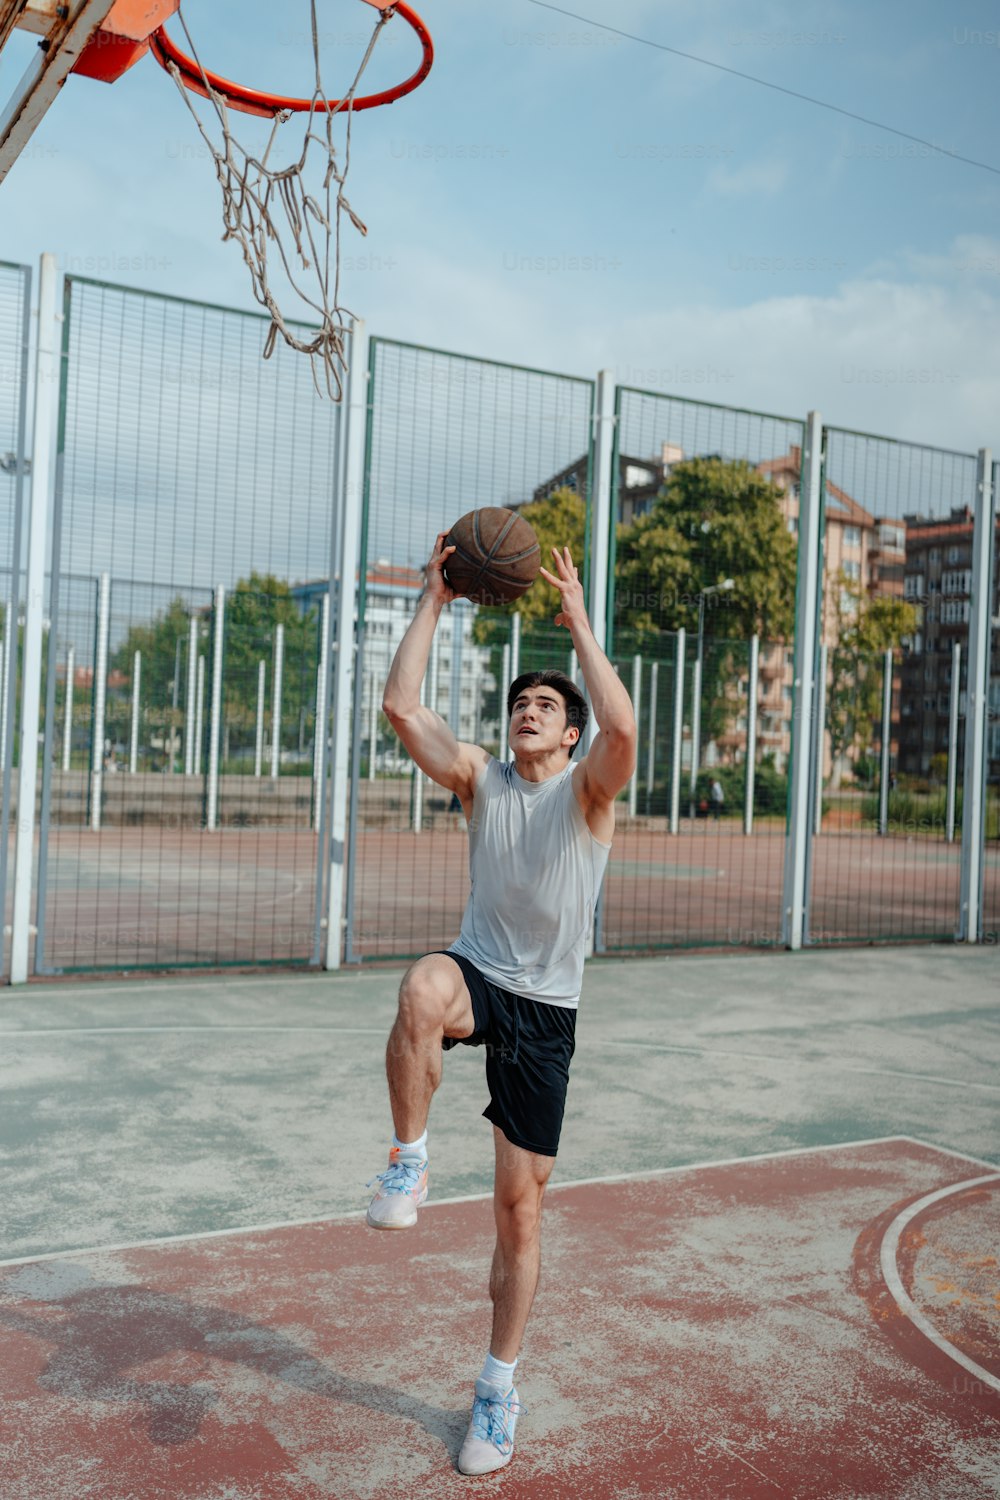 Un uomo sta giocando a basket su un campo